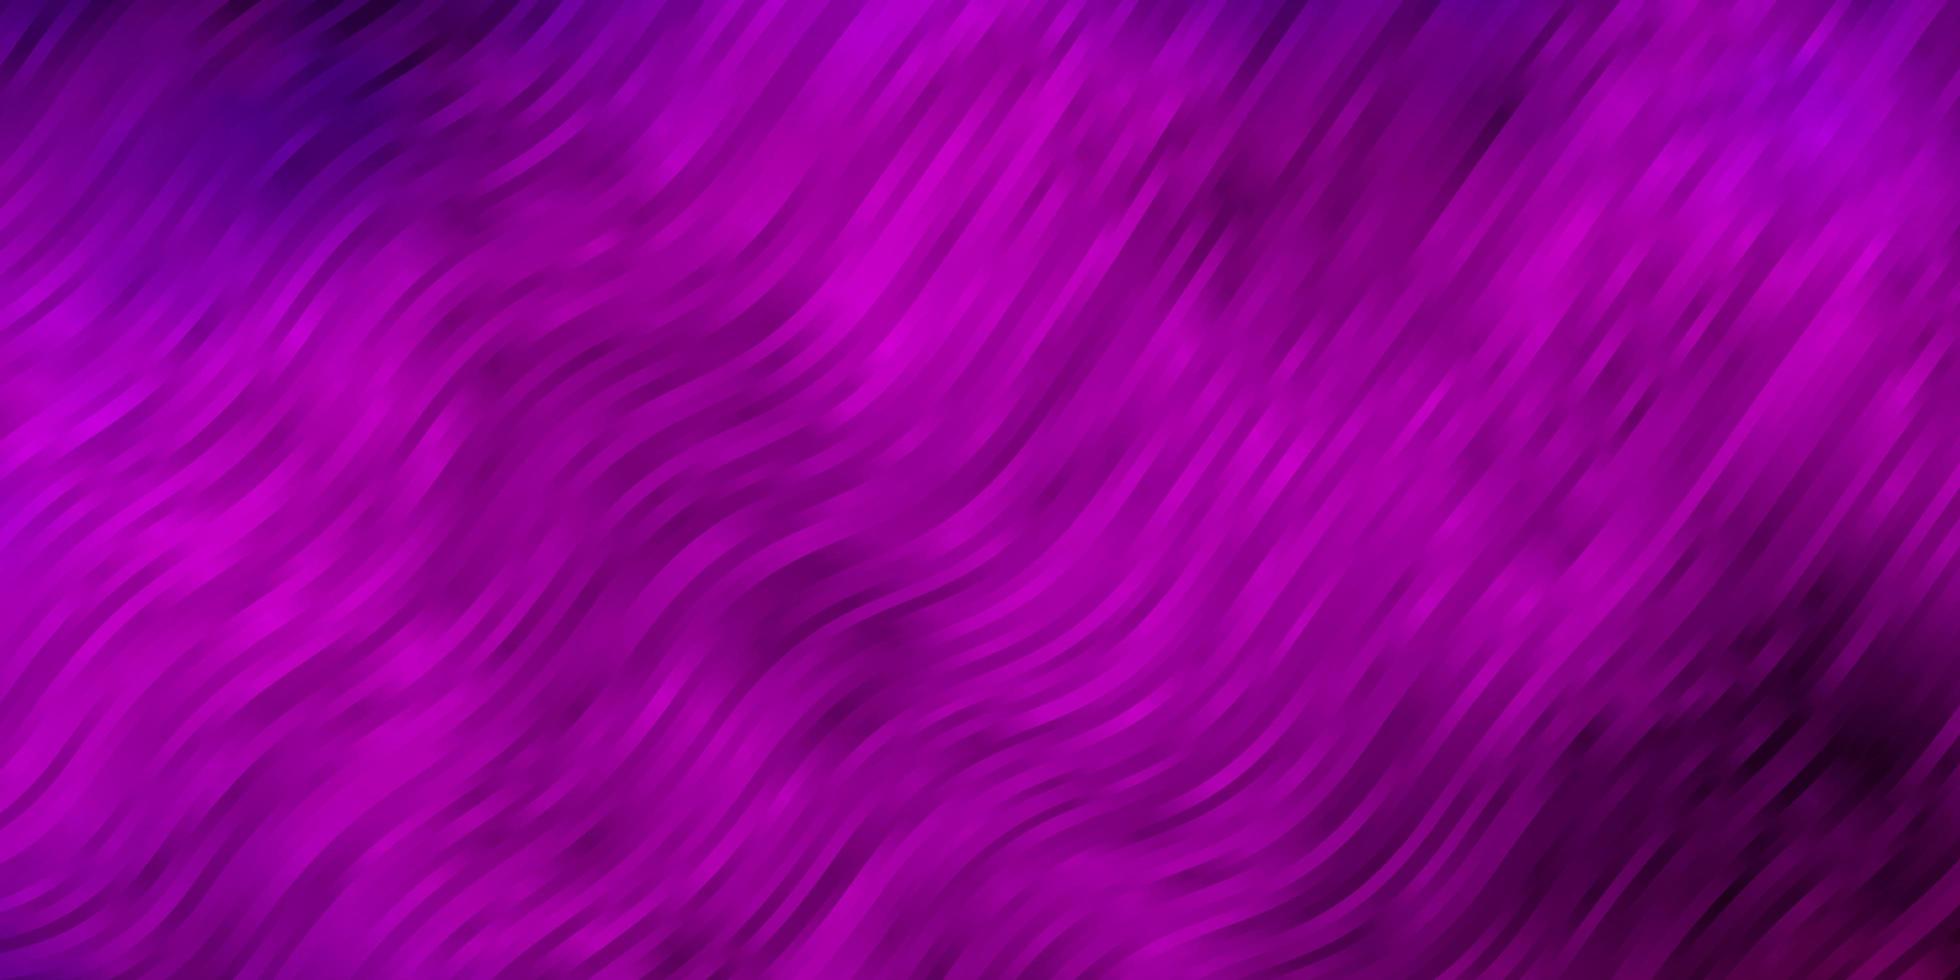 hellviolette rosa Vektortextur mit Kurven abstrakte Darstellung mit Bandy-Gradienten-Linien-Muster für Werbeanzeigen vektor